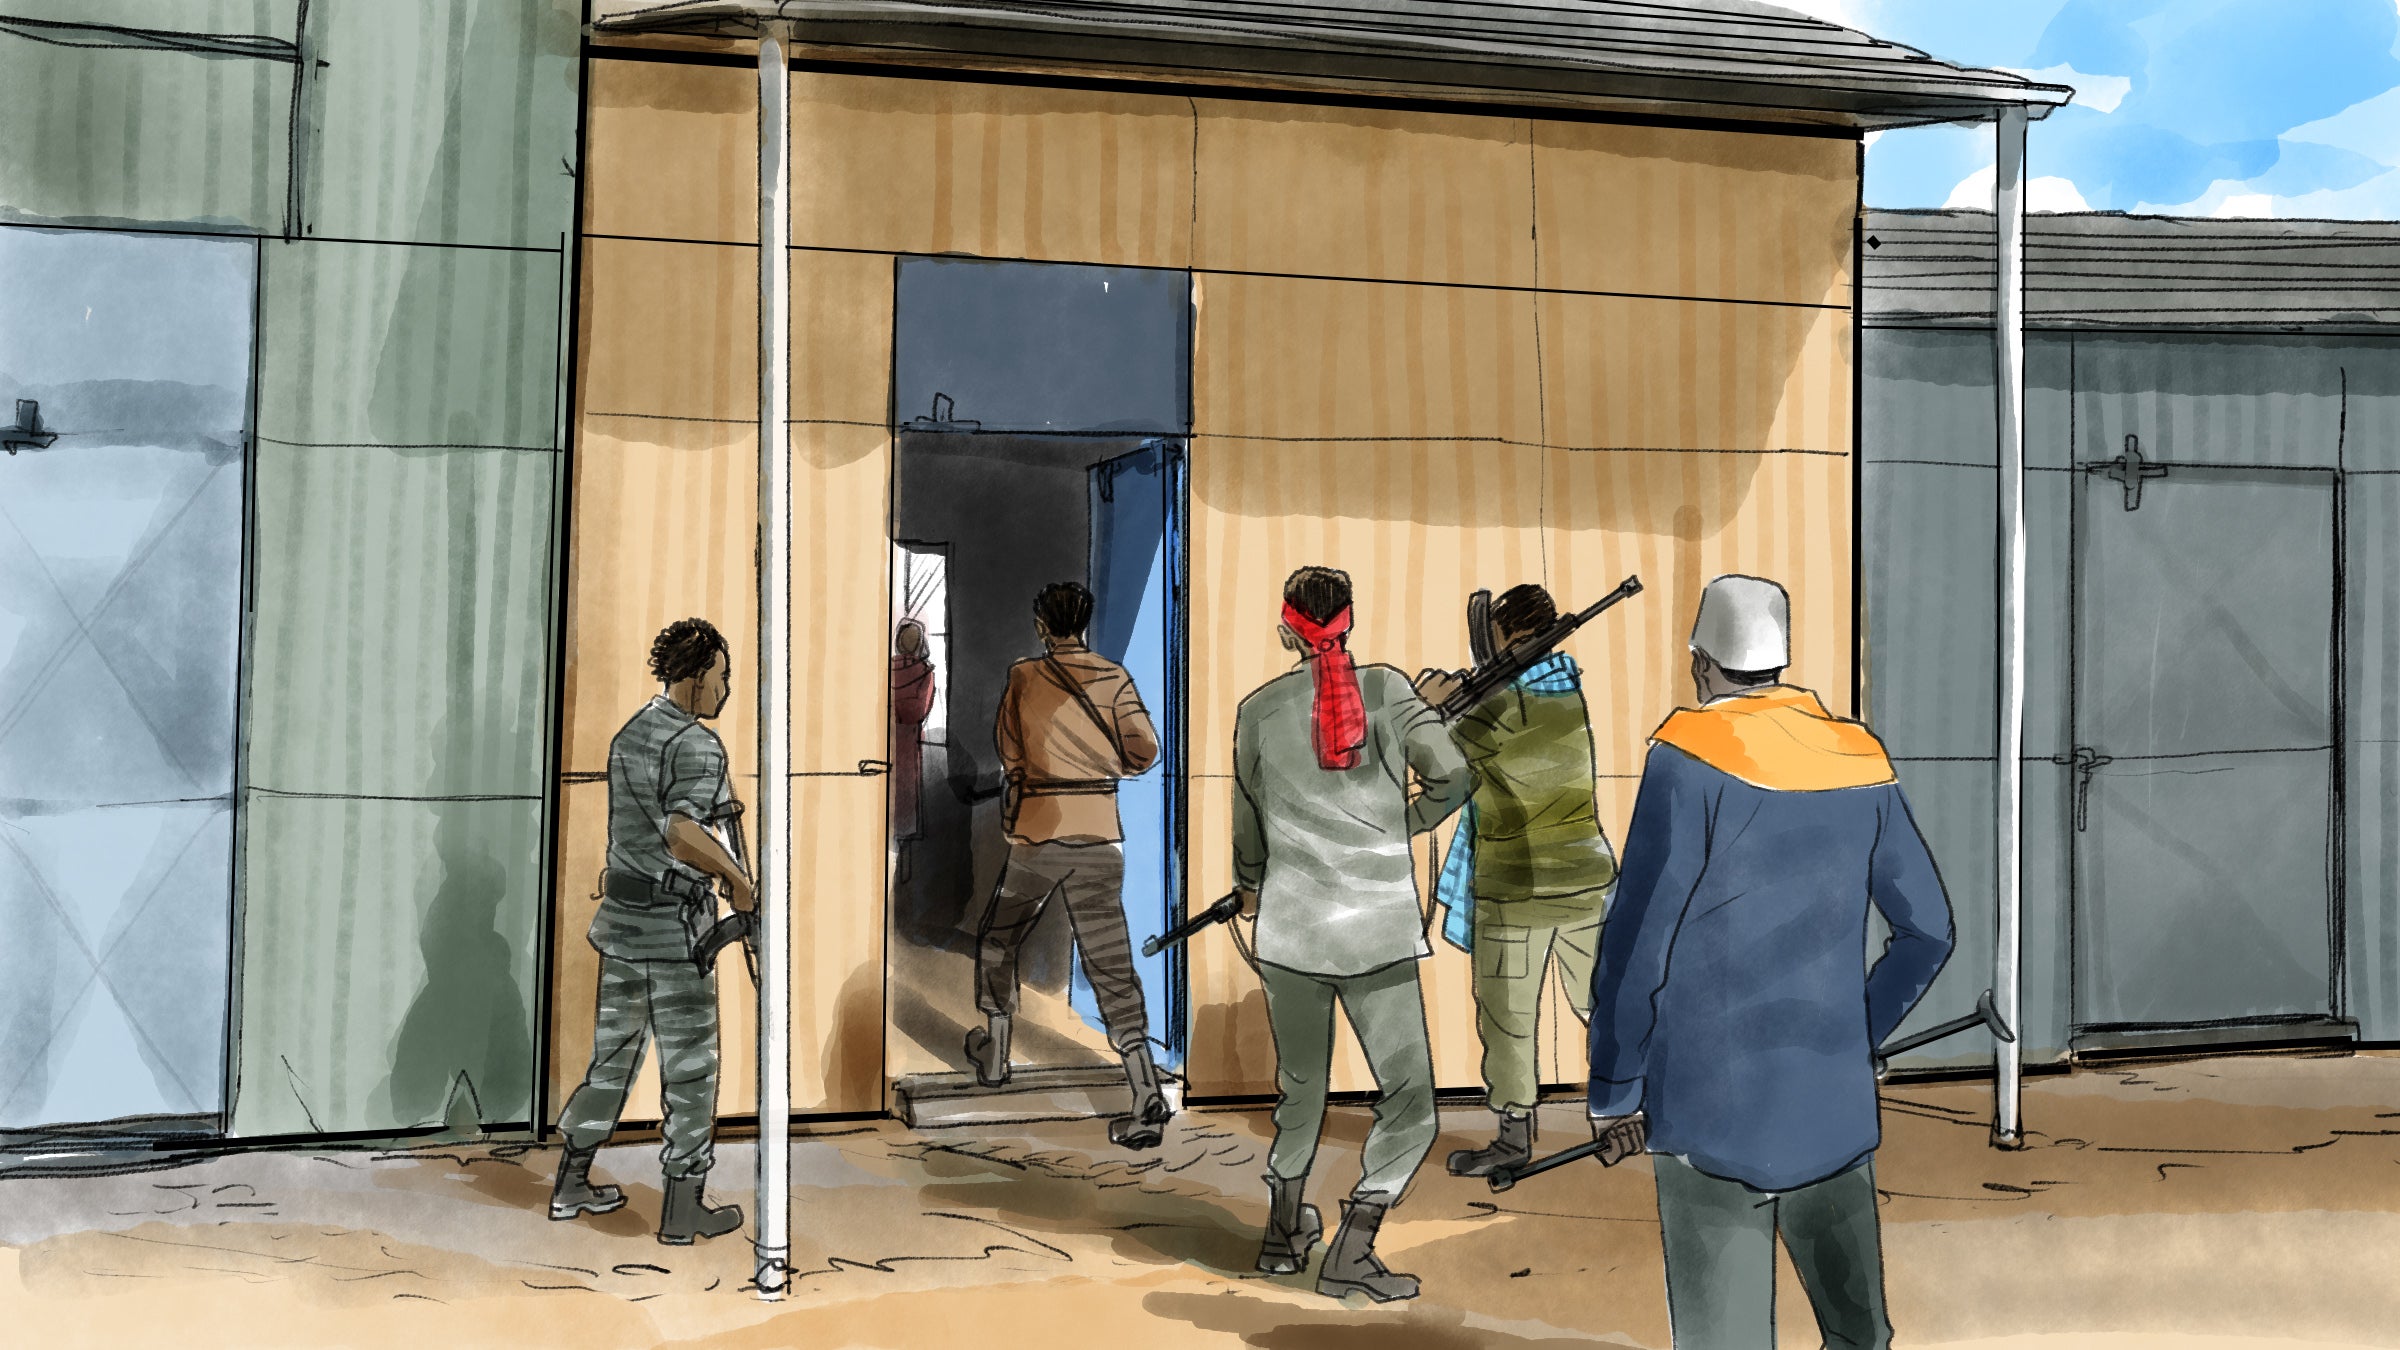 Illustration of armed men entering a building